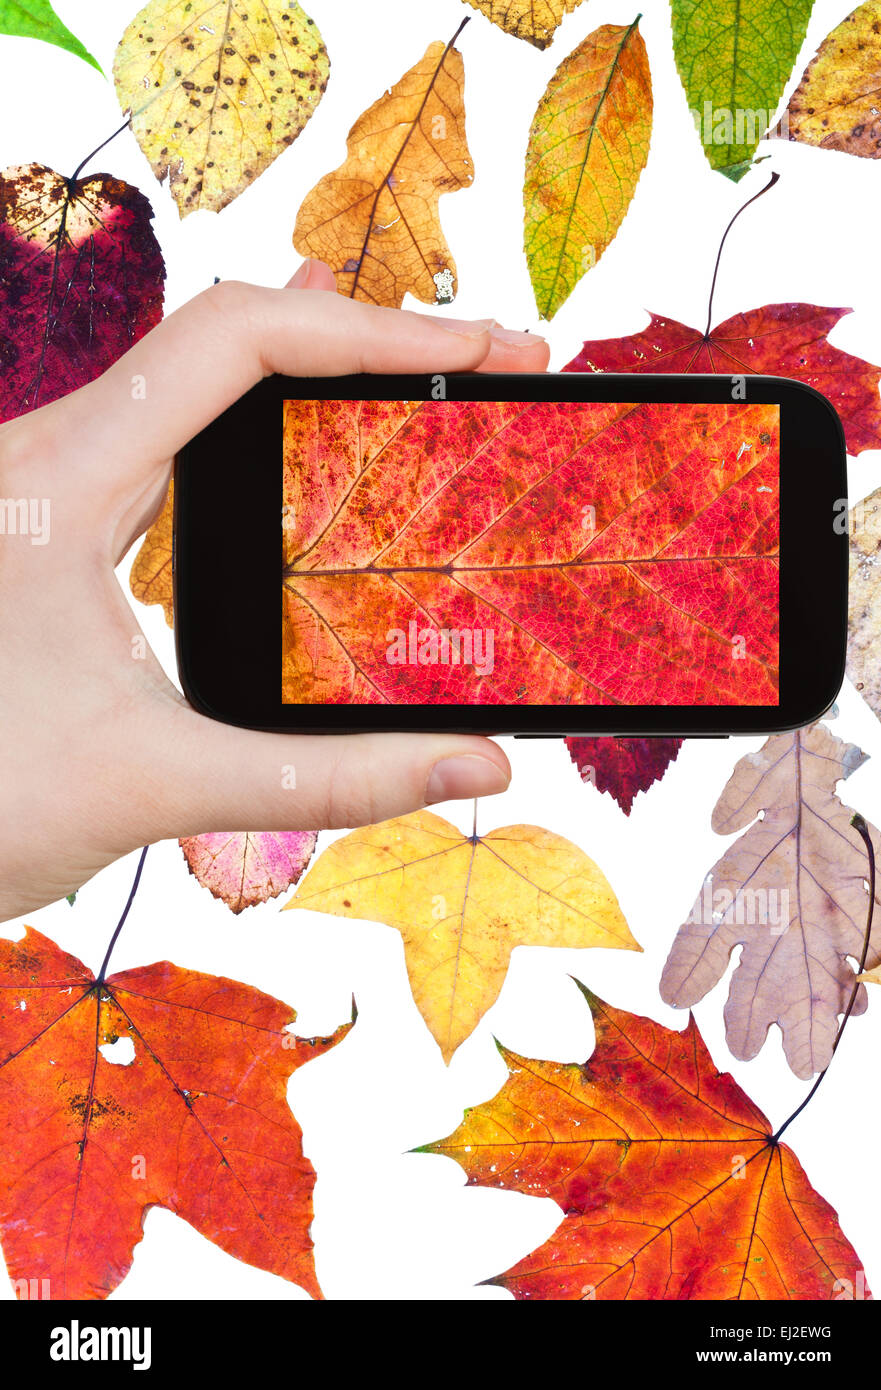 Fotografieren Blume Konzept - Tourist findet, das Bild des gefallenen Herbst auf Smartphone Blätter, Stockfoto